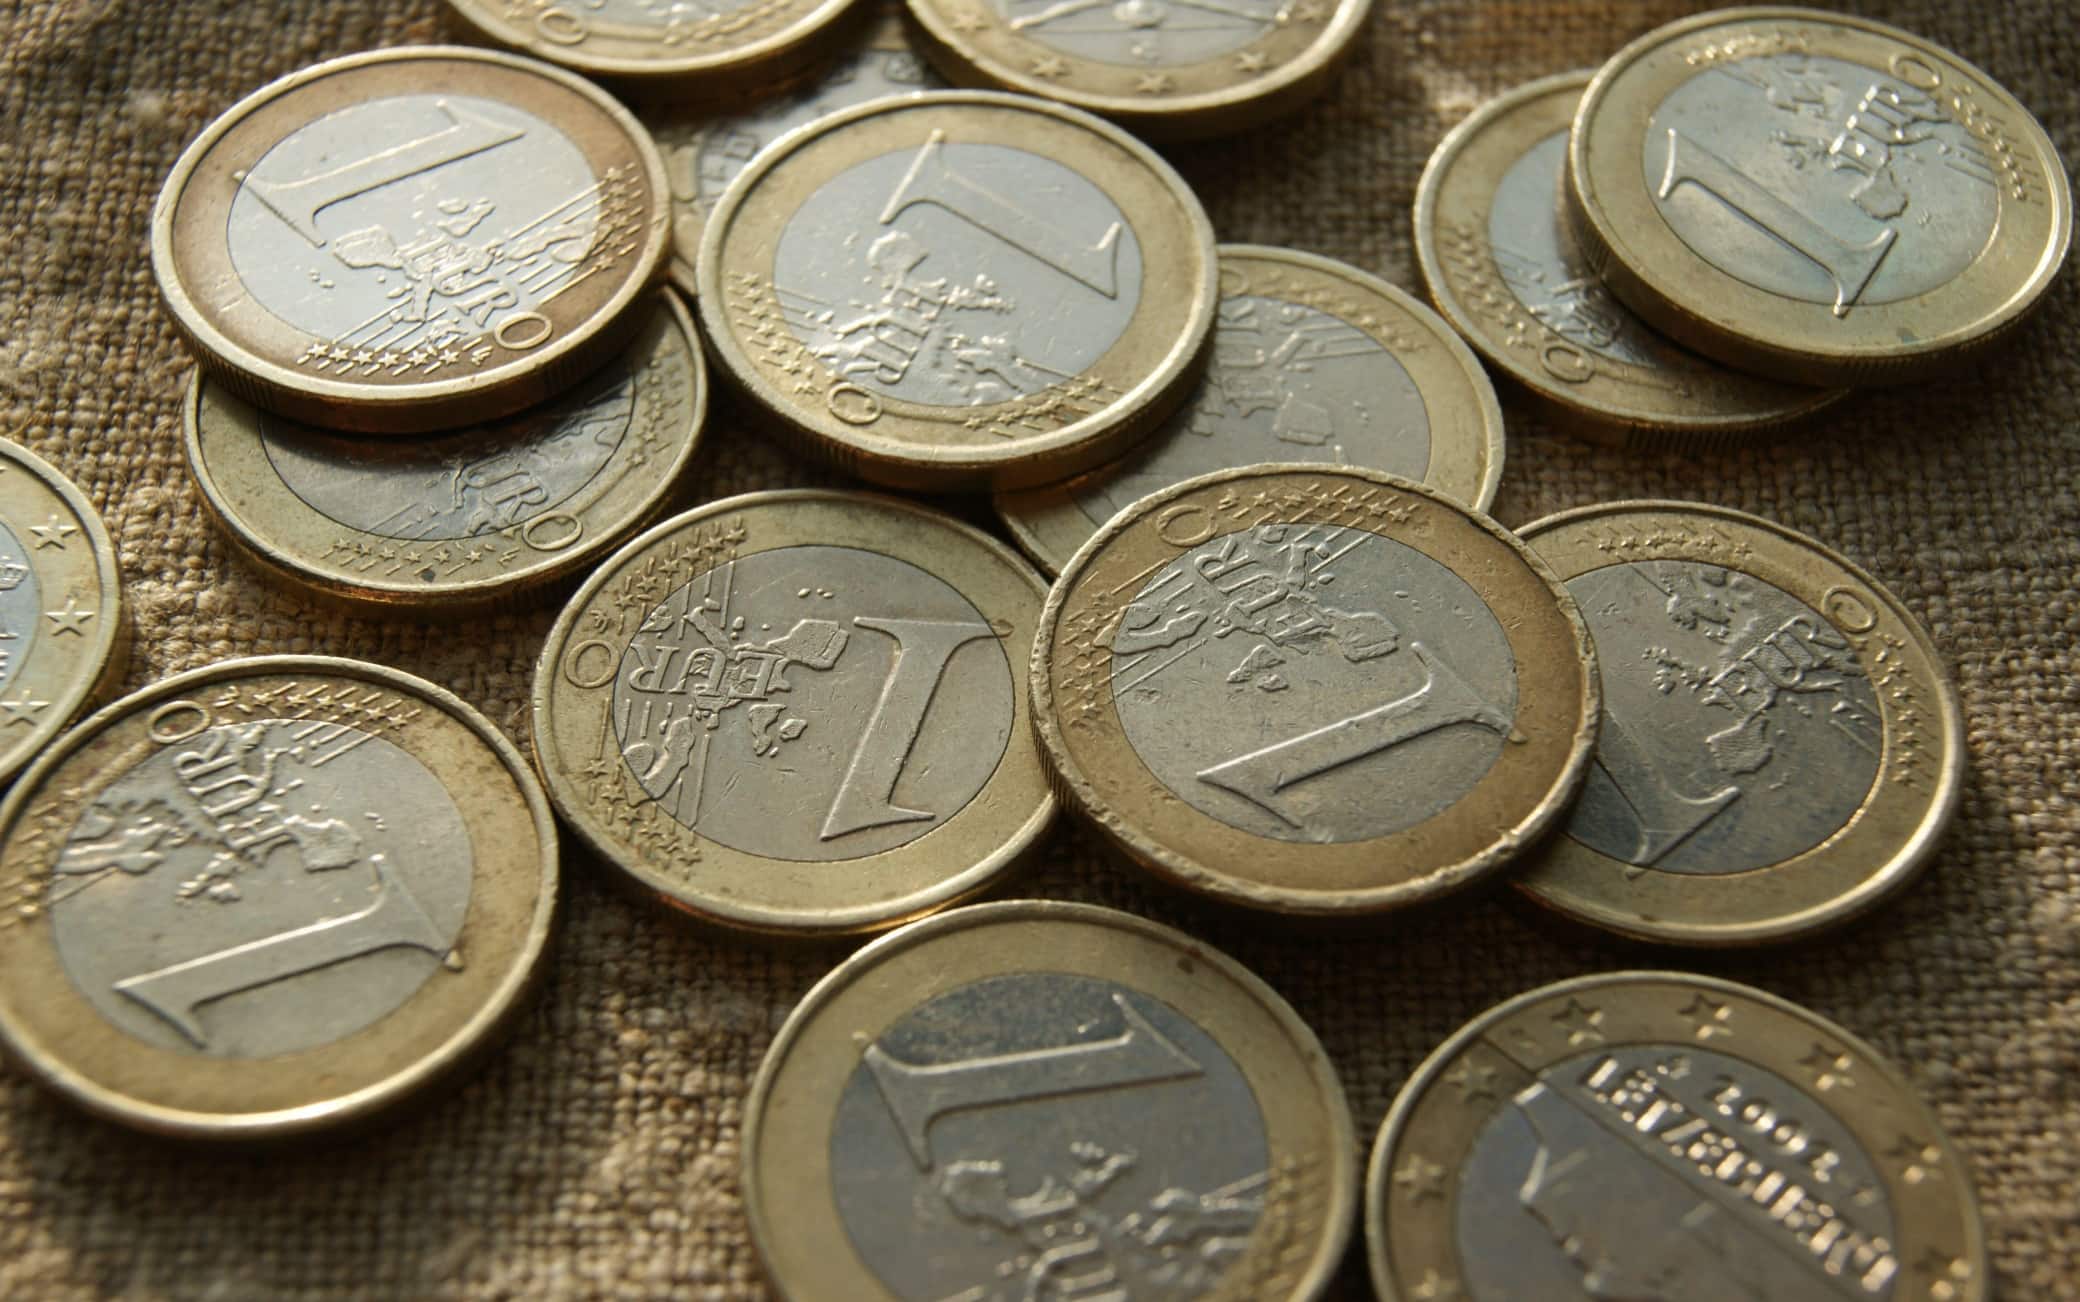 Questa moneta da 1 euro con il gufo vale davvero una fortuna? - greenMe